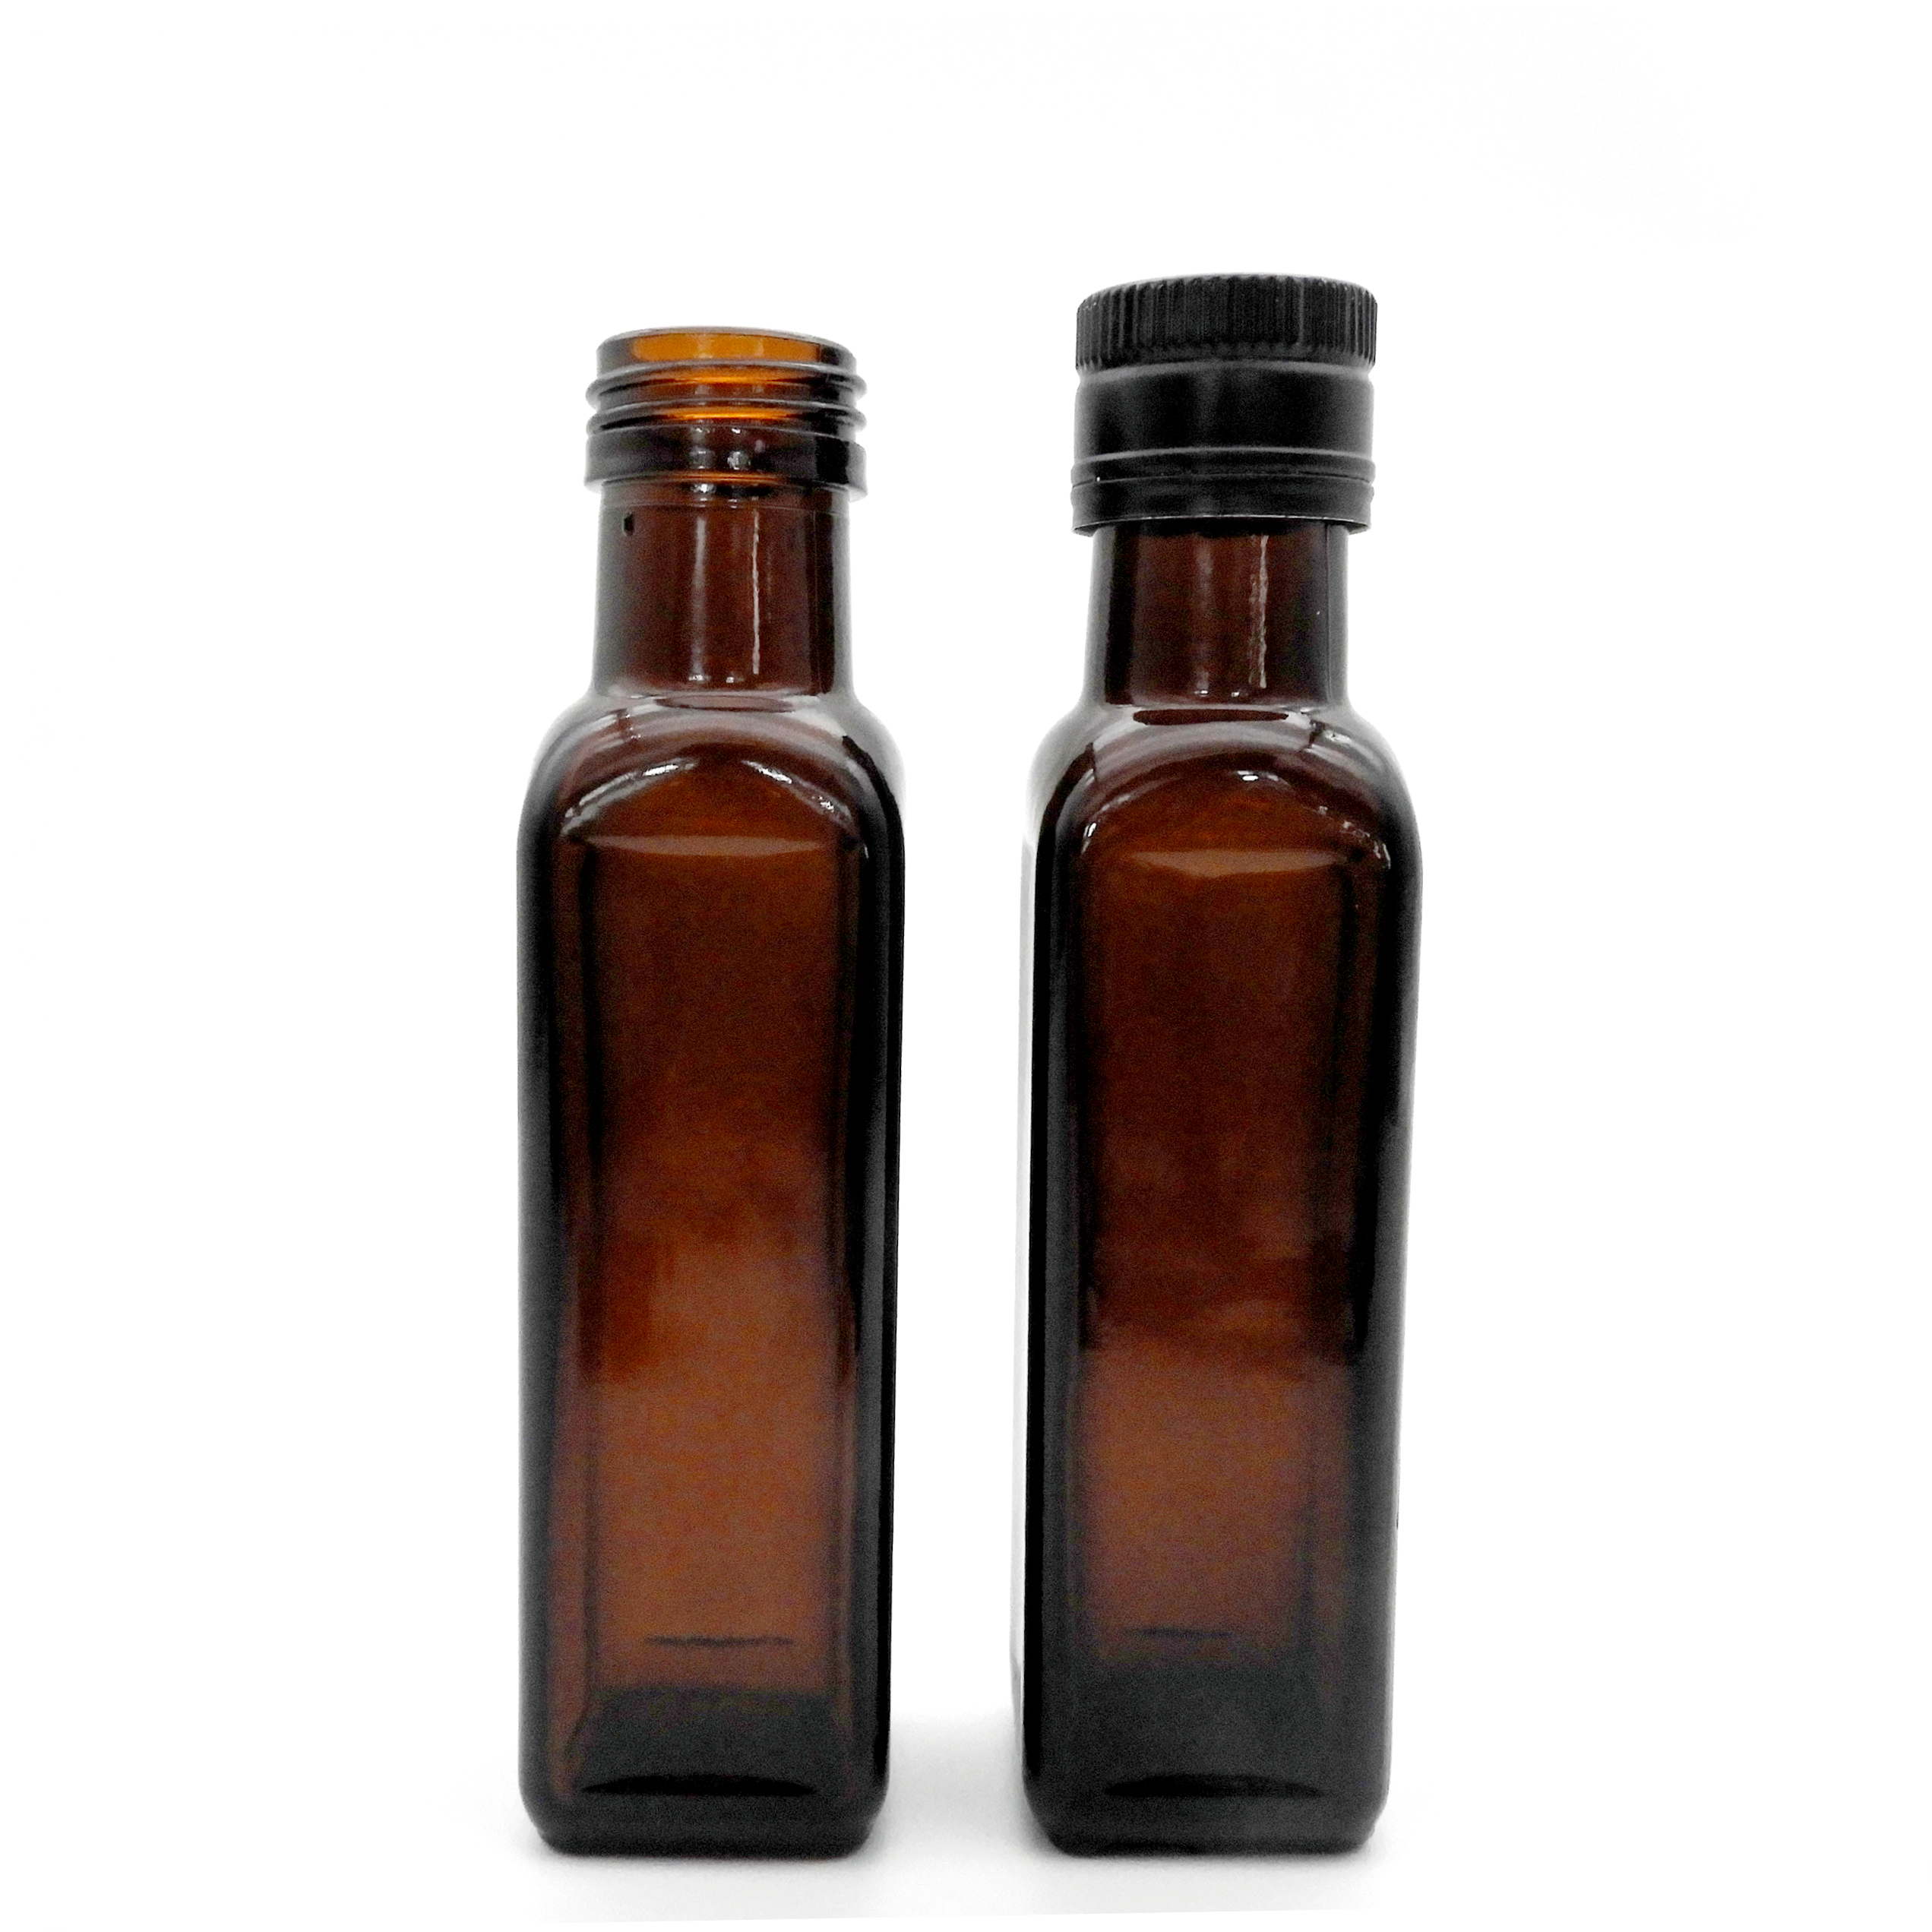 Botol Minyak Zaitun Persegi 100ml (1)